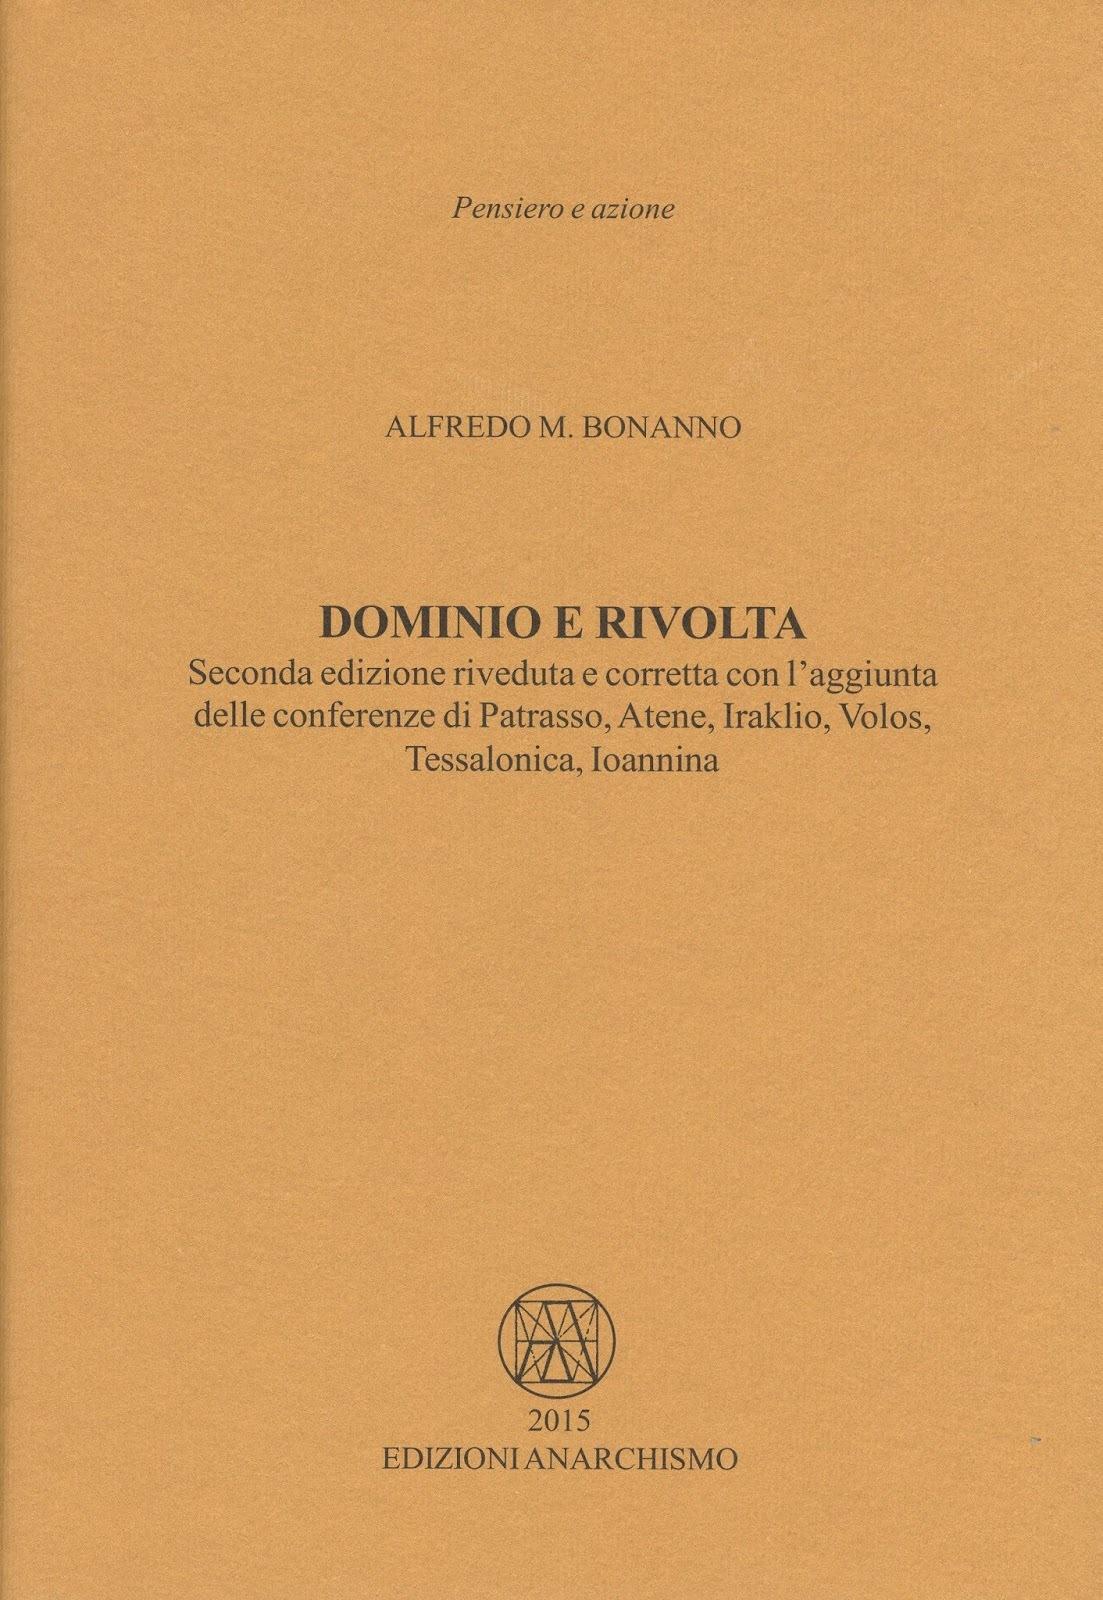 Alfredo Maria Bonanno: Dominio e rivolta (Hardcover, Italiano language, 2015, Edizioni Anarchismo)